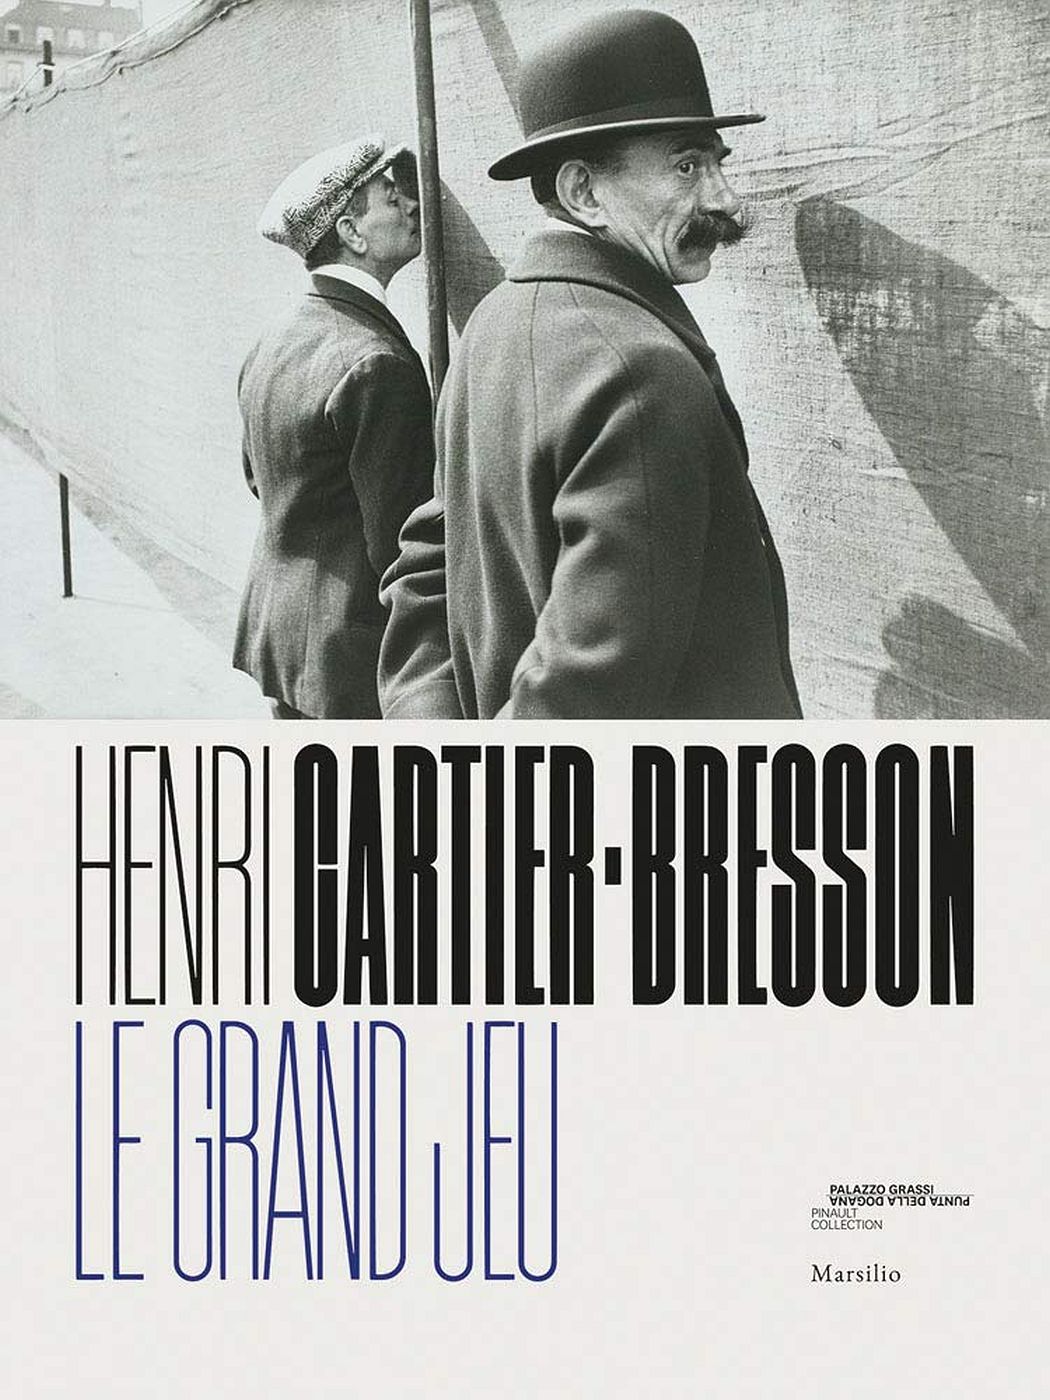 Henri Cartier-Bresson: Le Grand Jeu